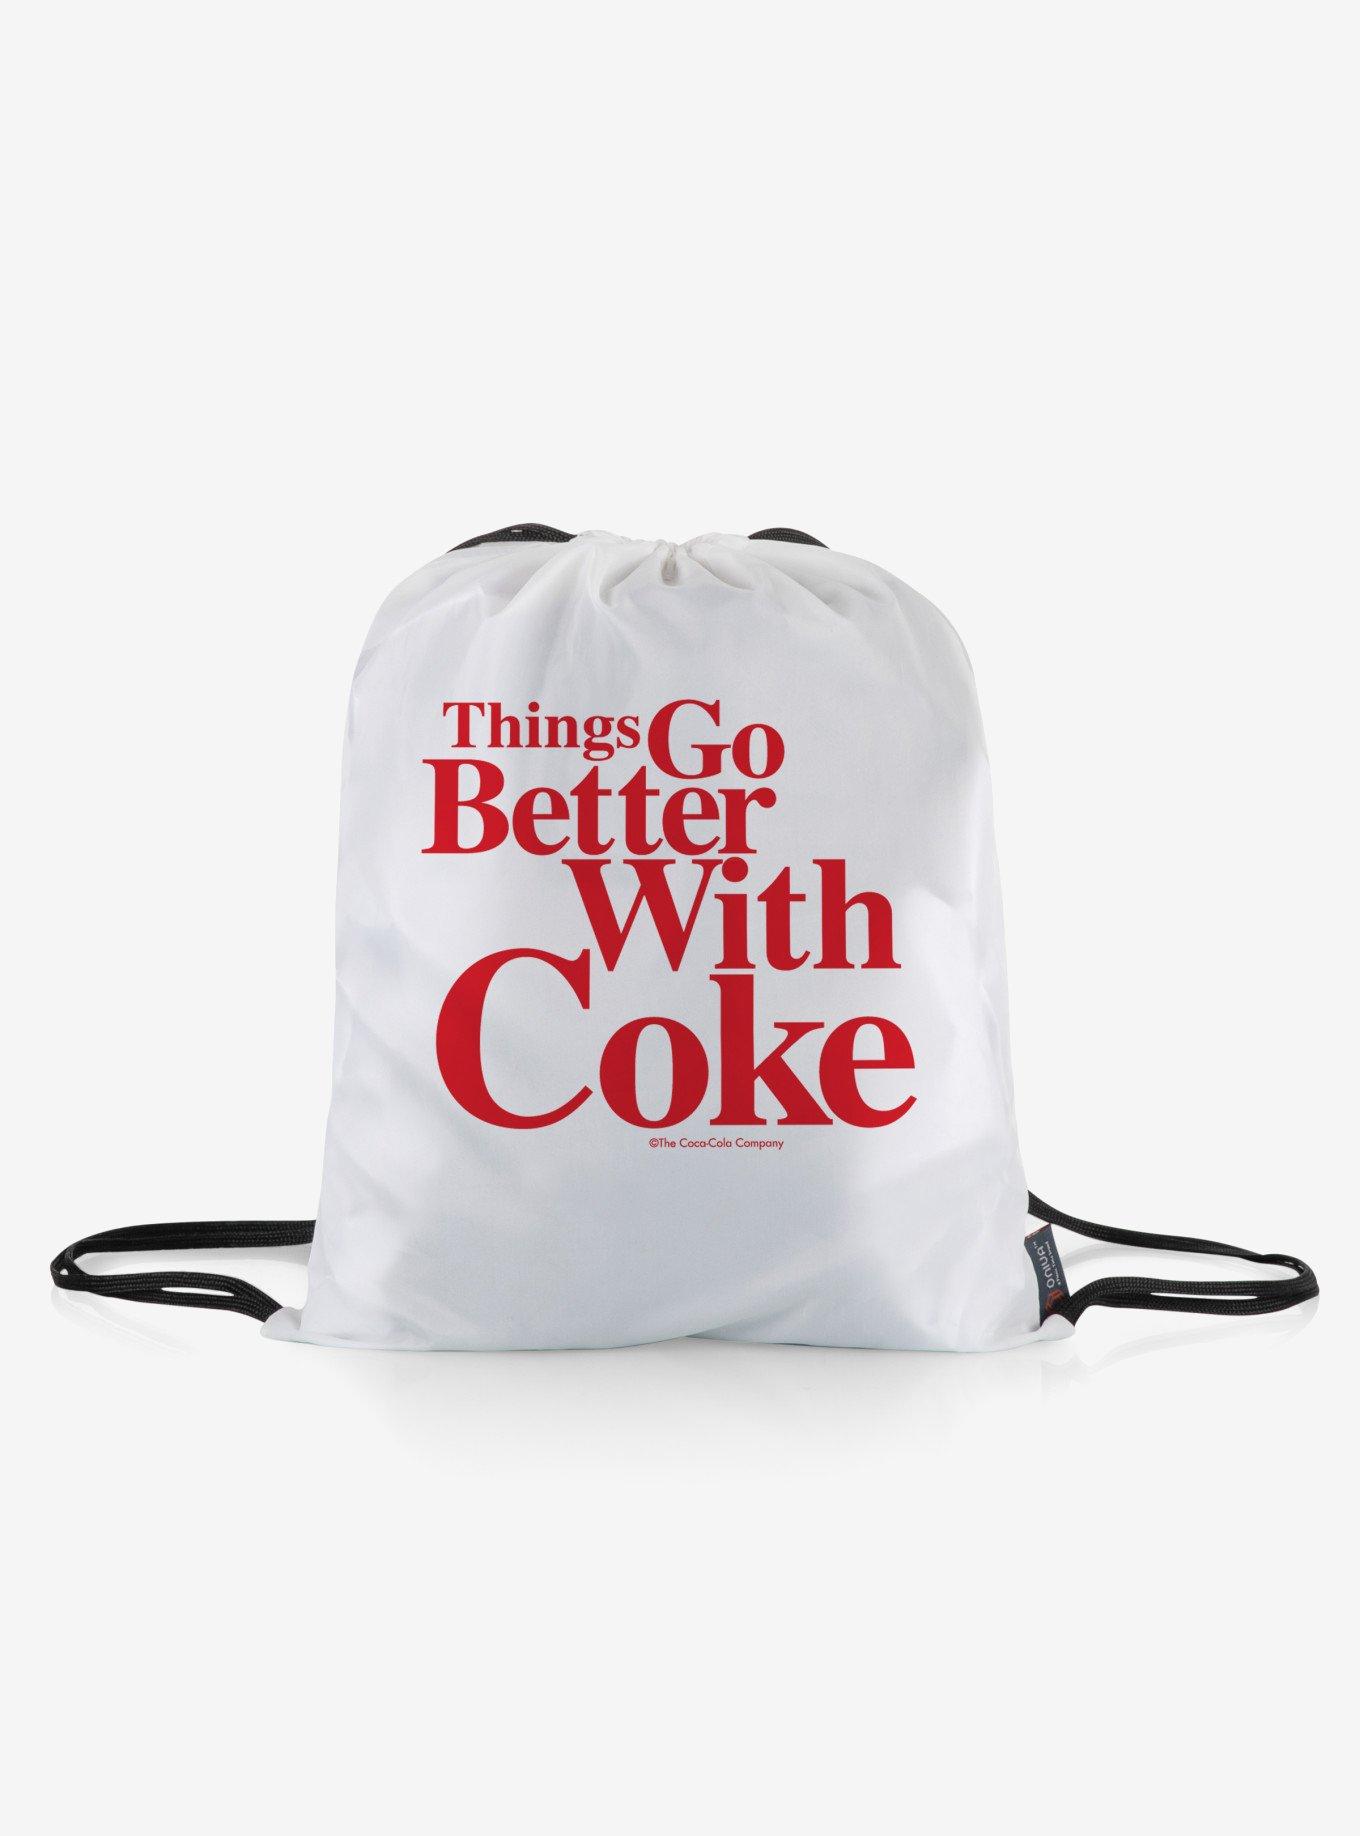 Coca-Cola Coke Impresa Picnic Blanket, , alternate